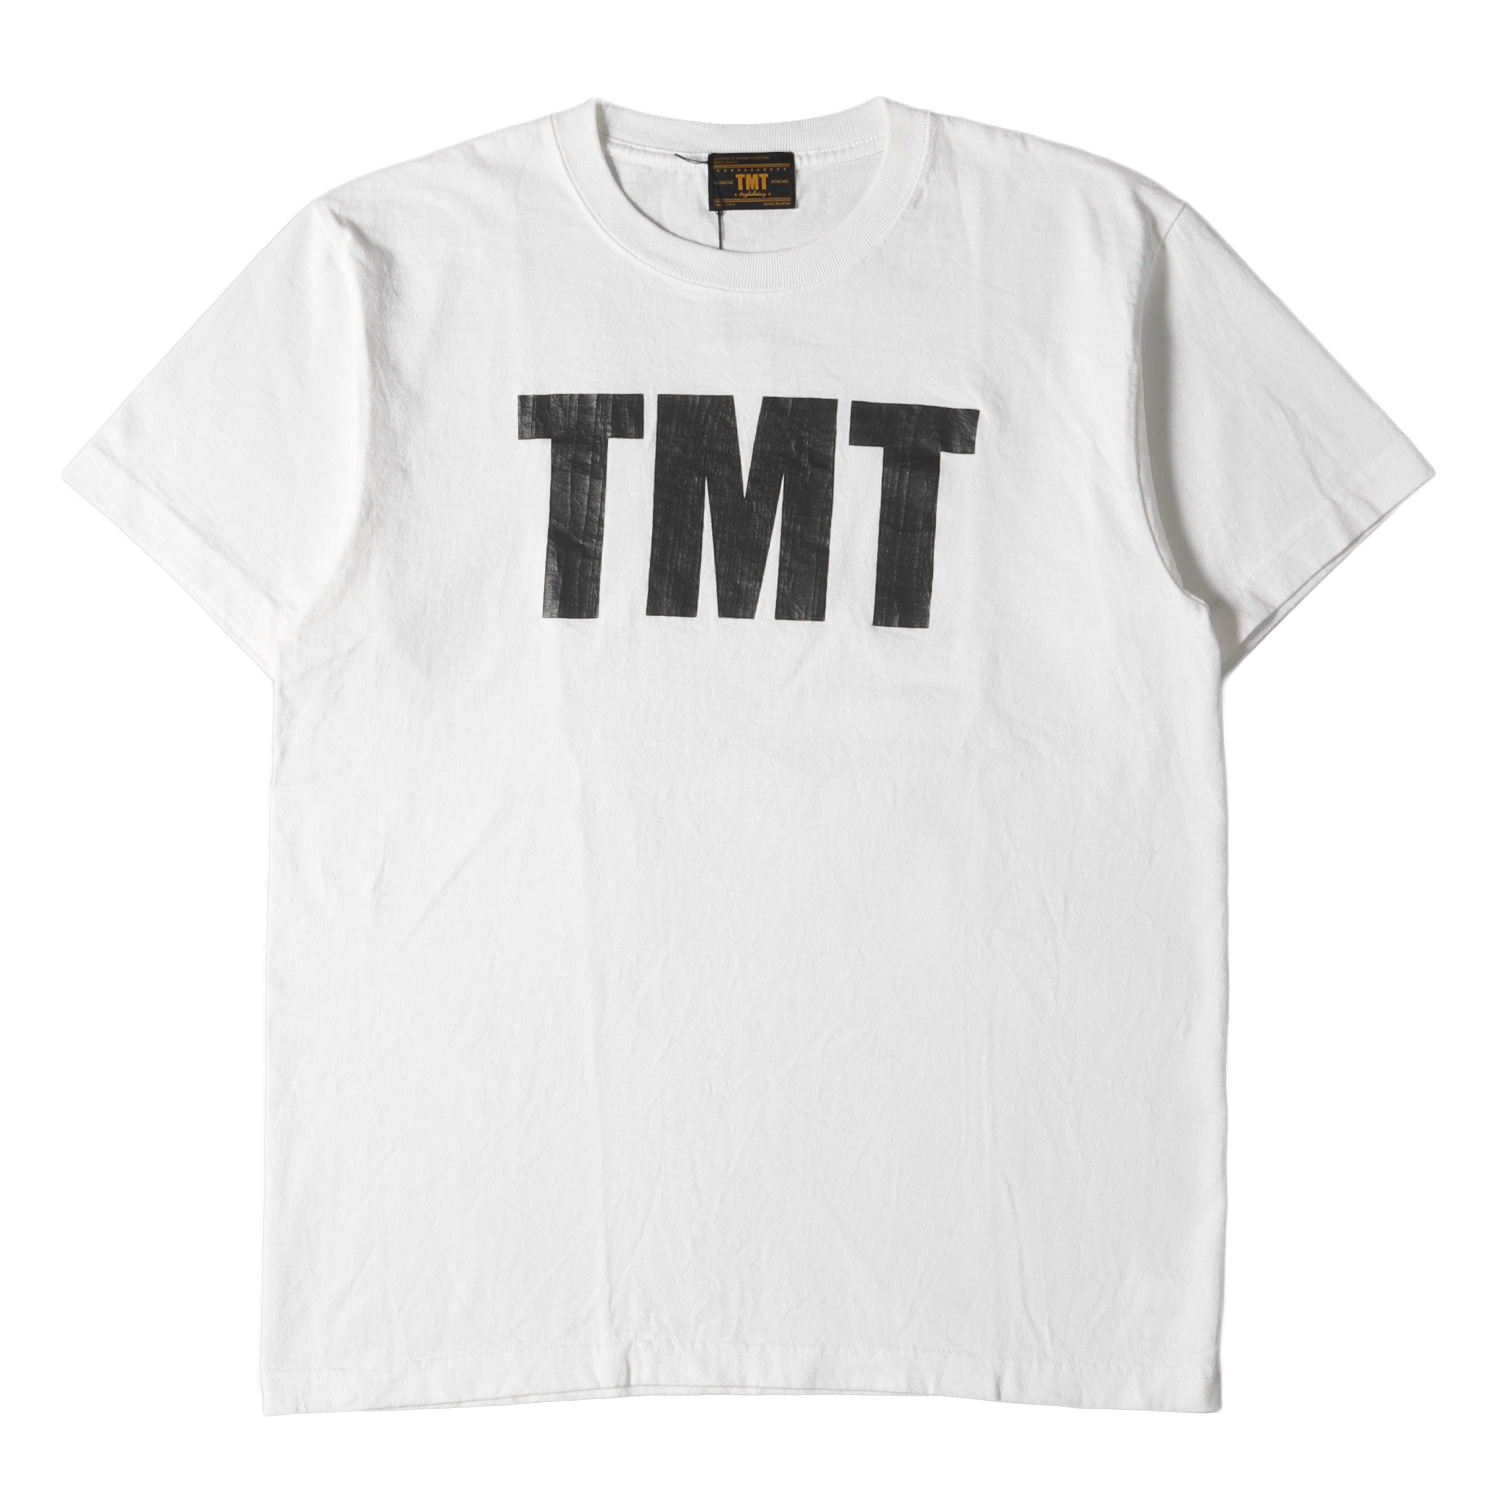 新モデル TMT スウェット。美品です。TMT Tシャツ。 - トップス